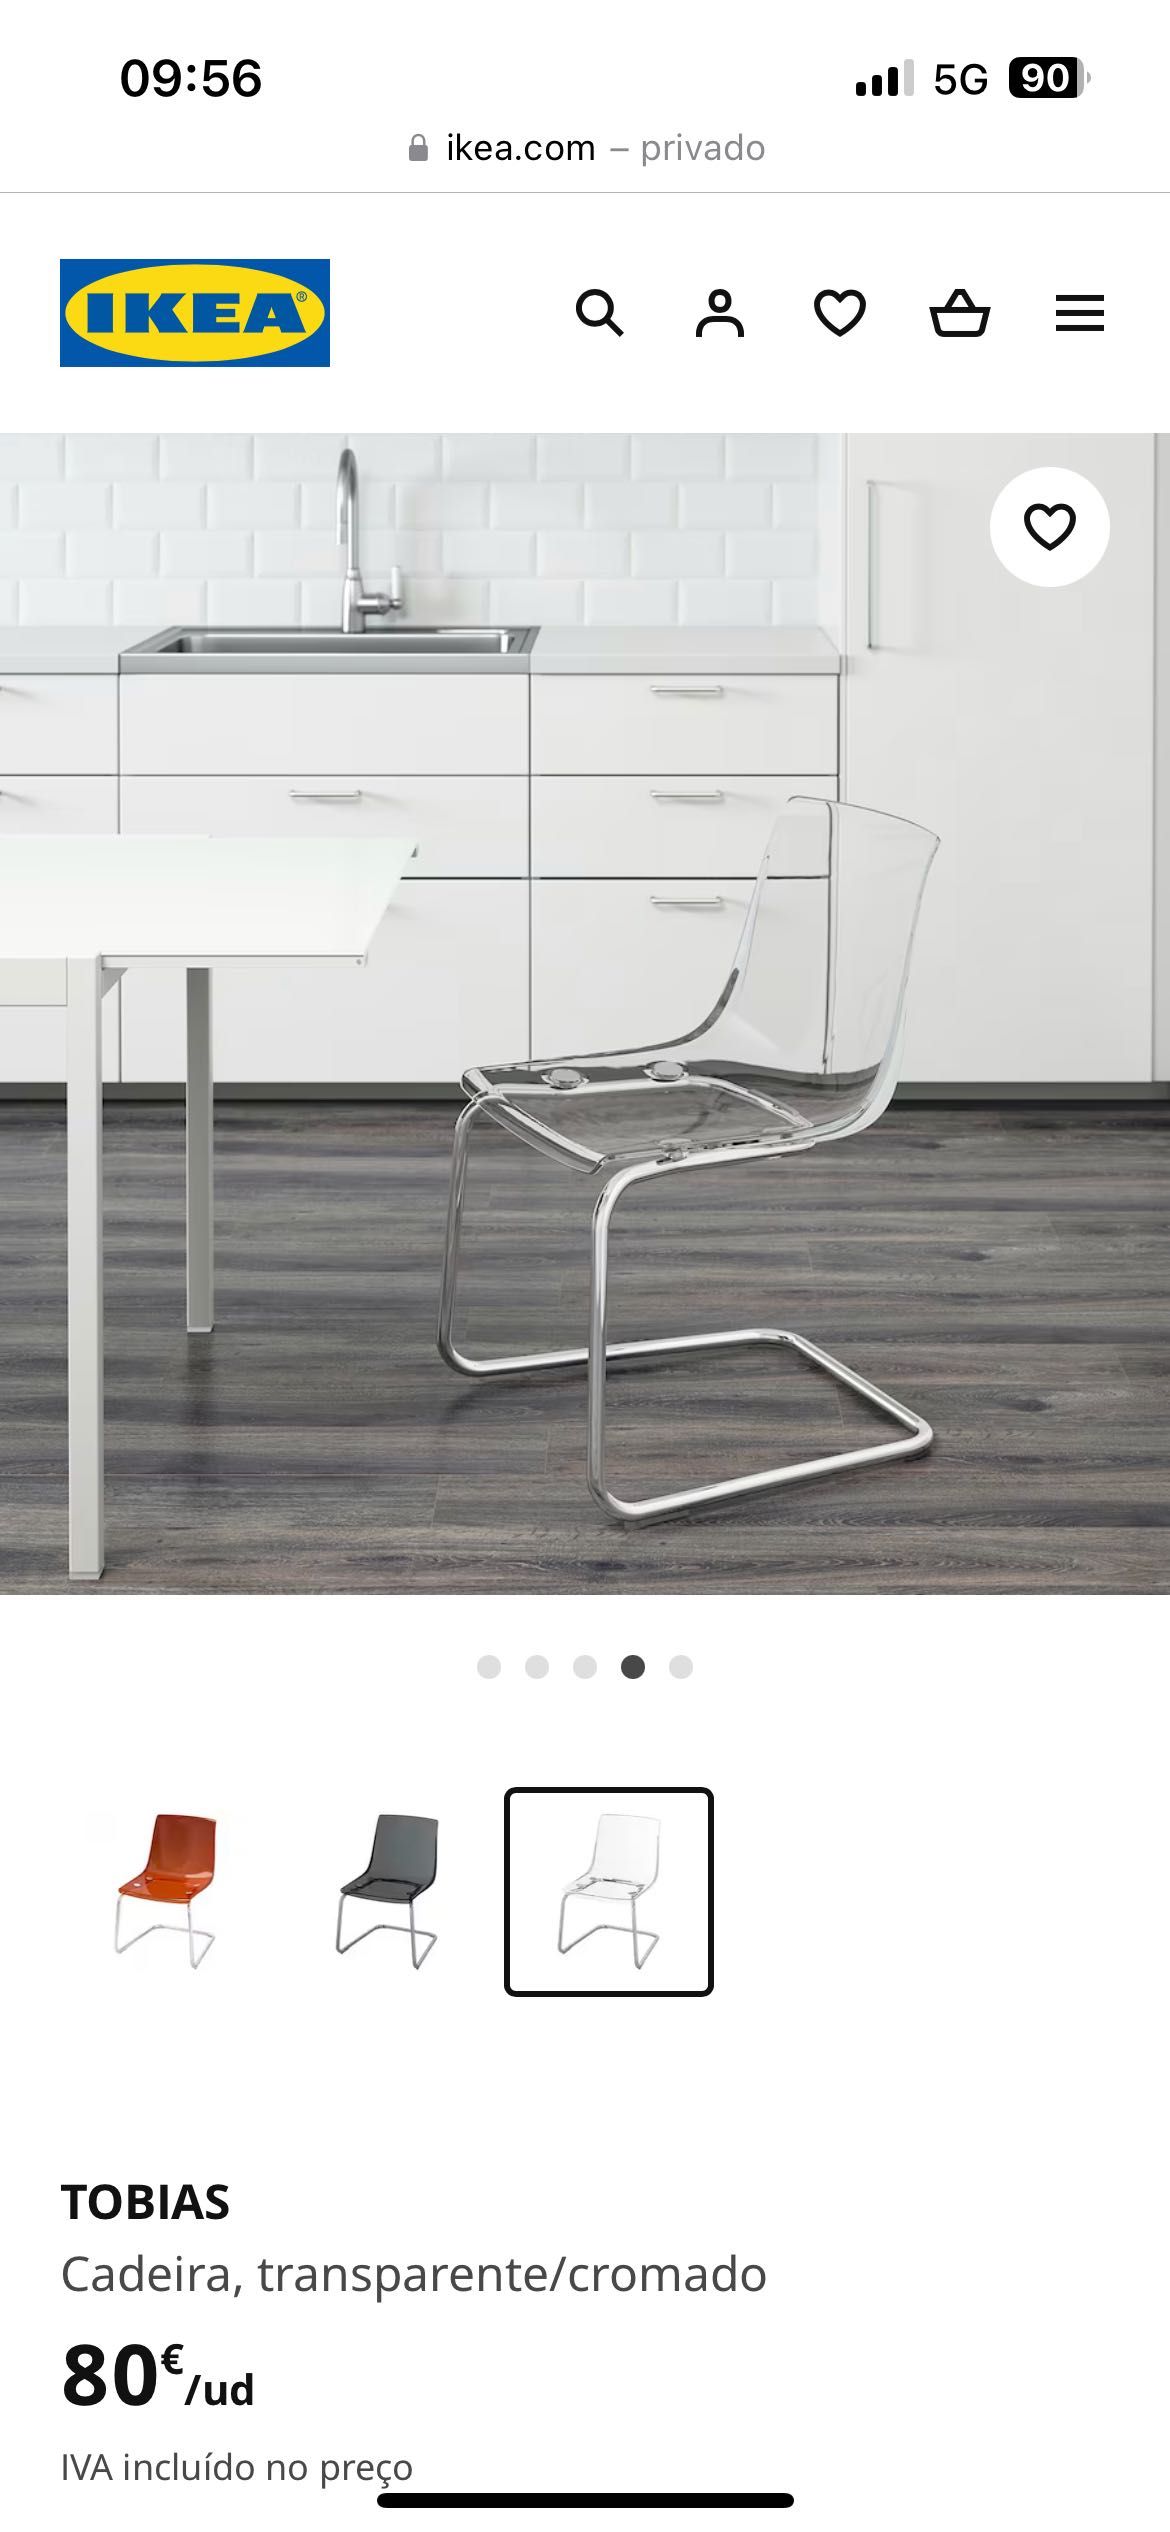 Cadeiras IKEA transparentes